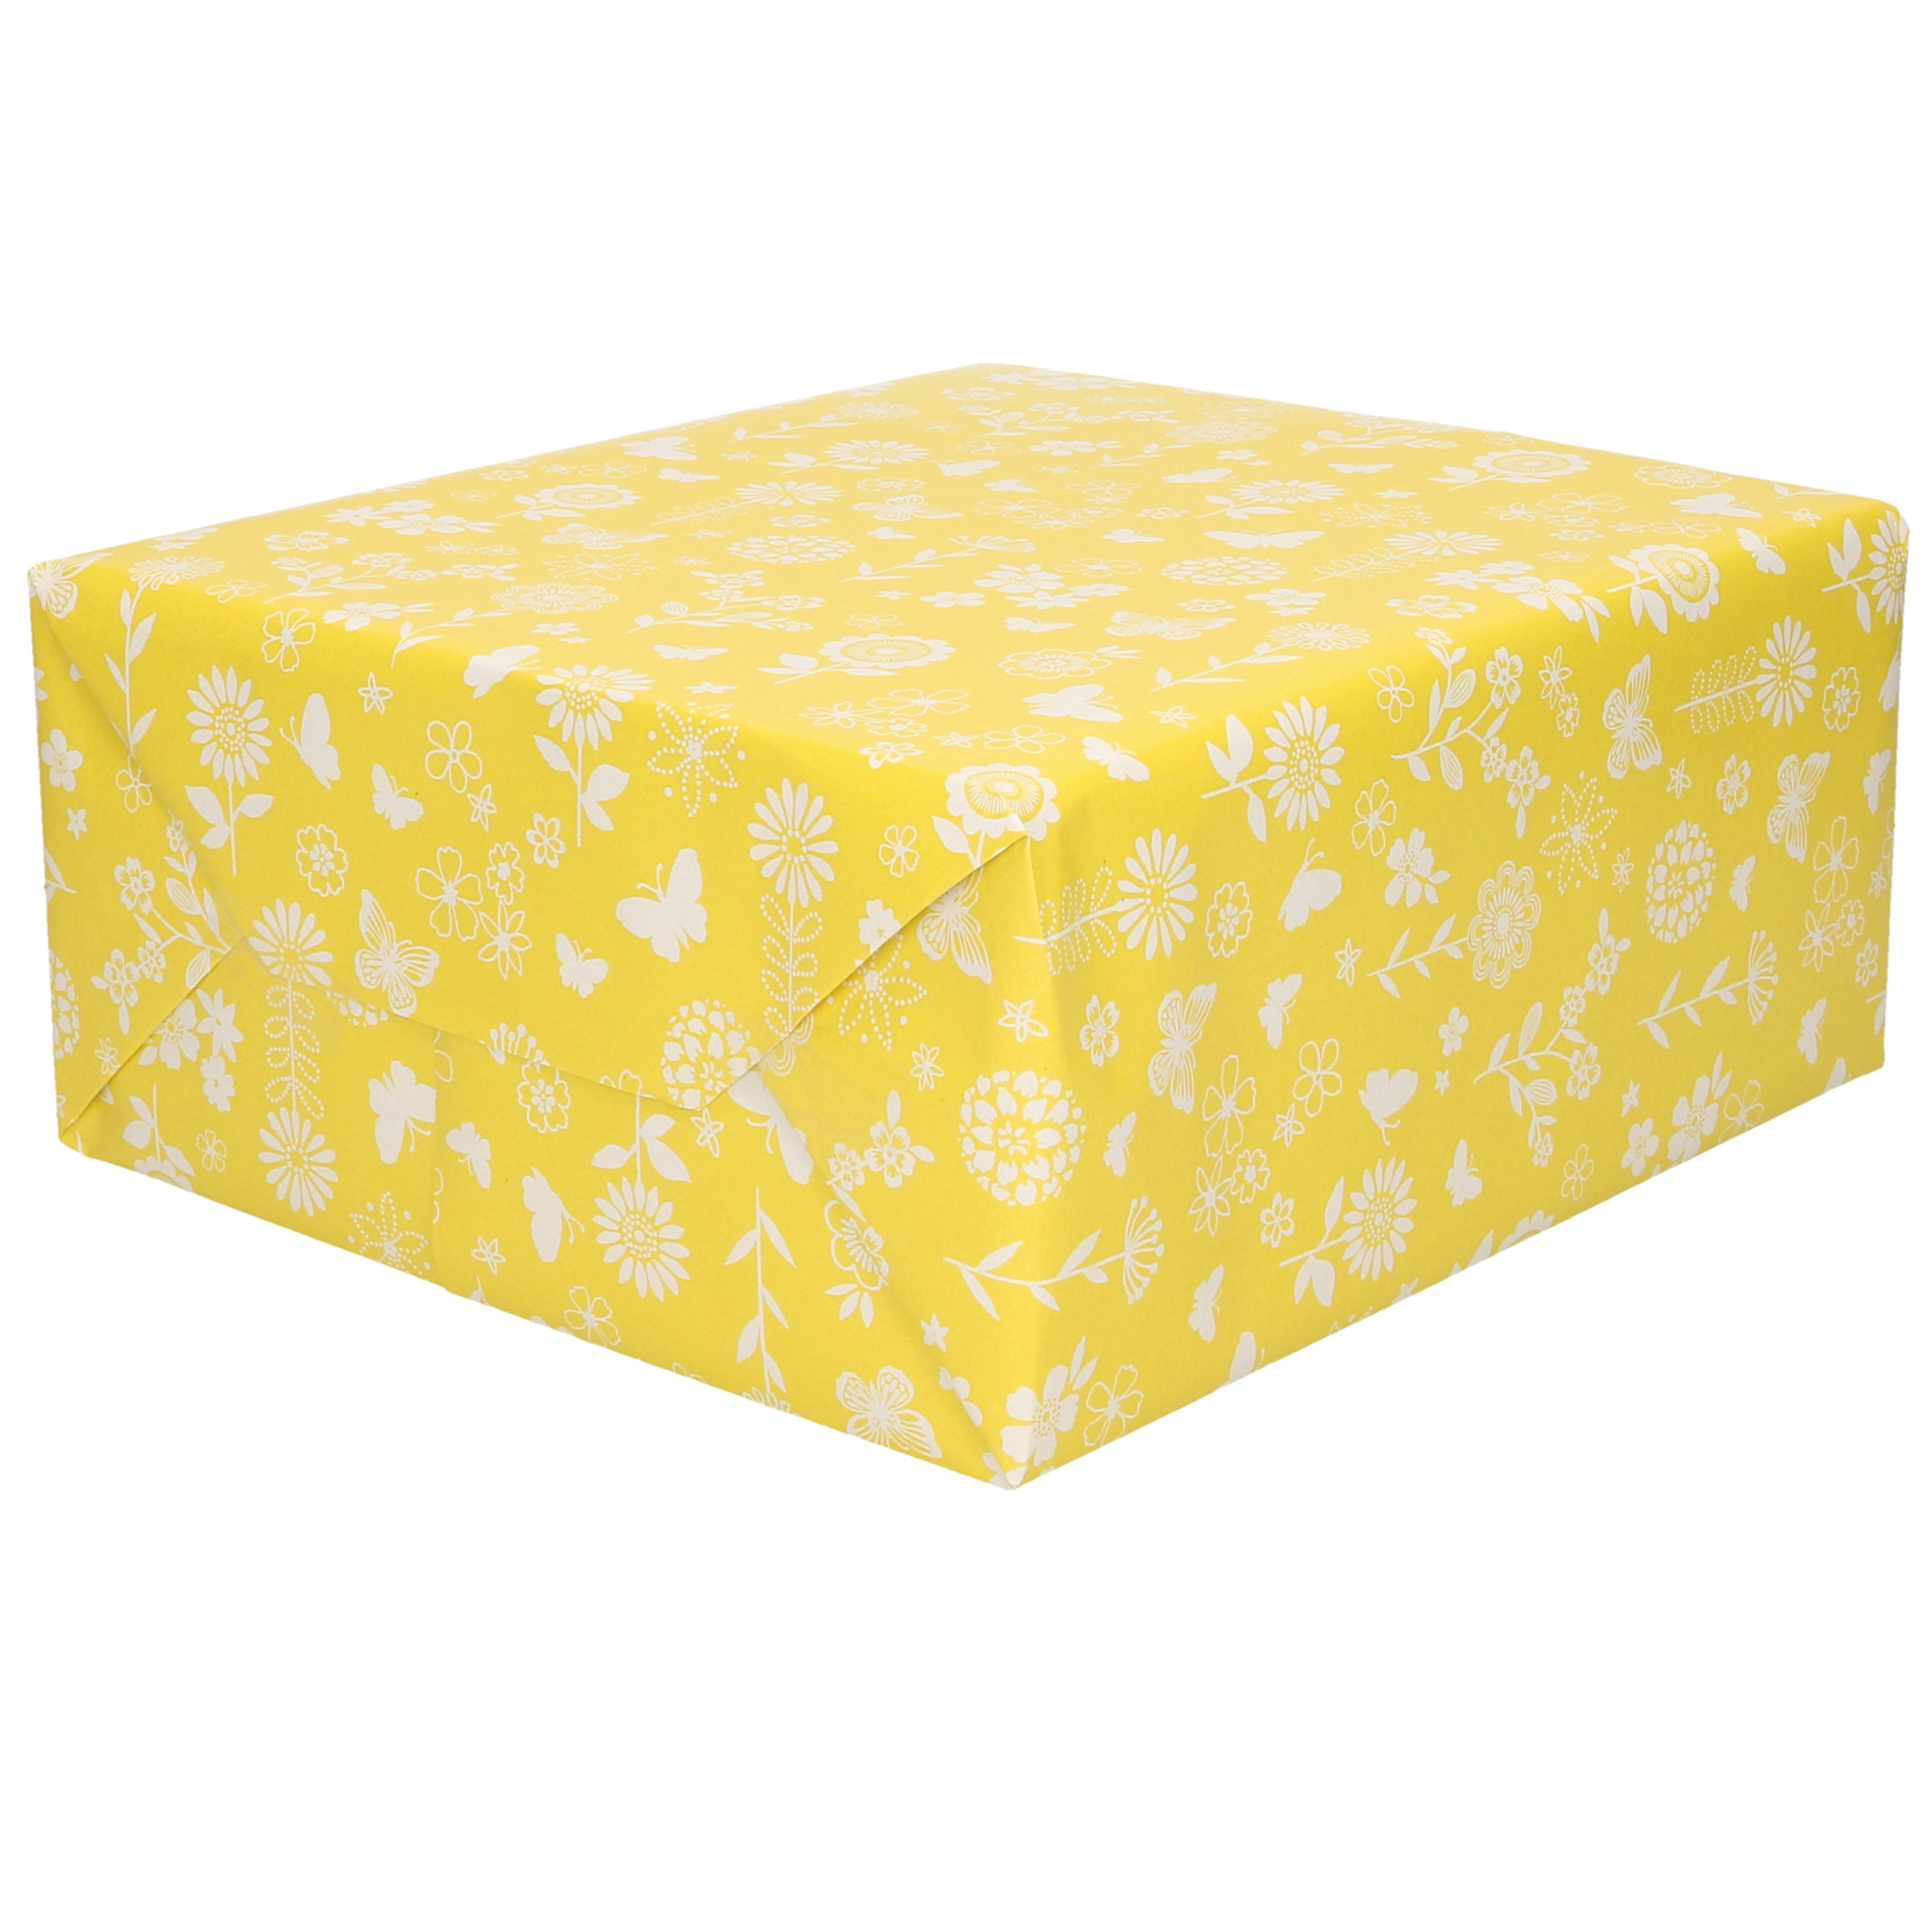 1x Rollen Inpakpapier-cadeaupapier geel met witte bloemen en vlinders 200 x 70 cm